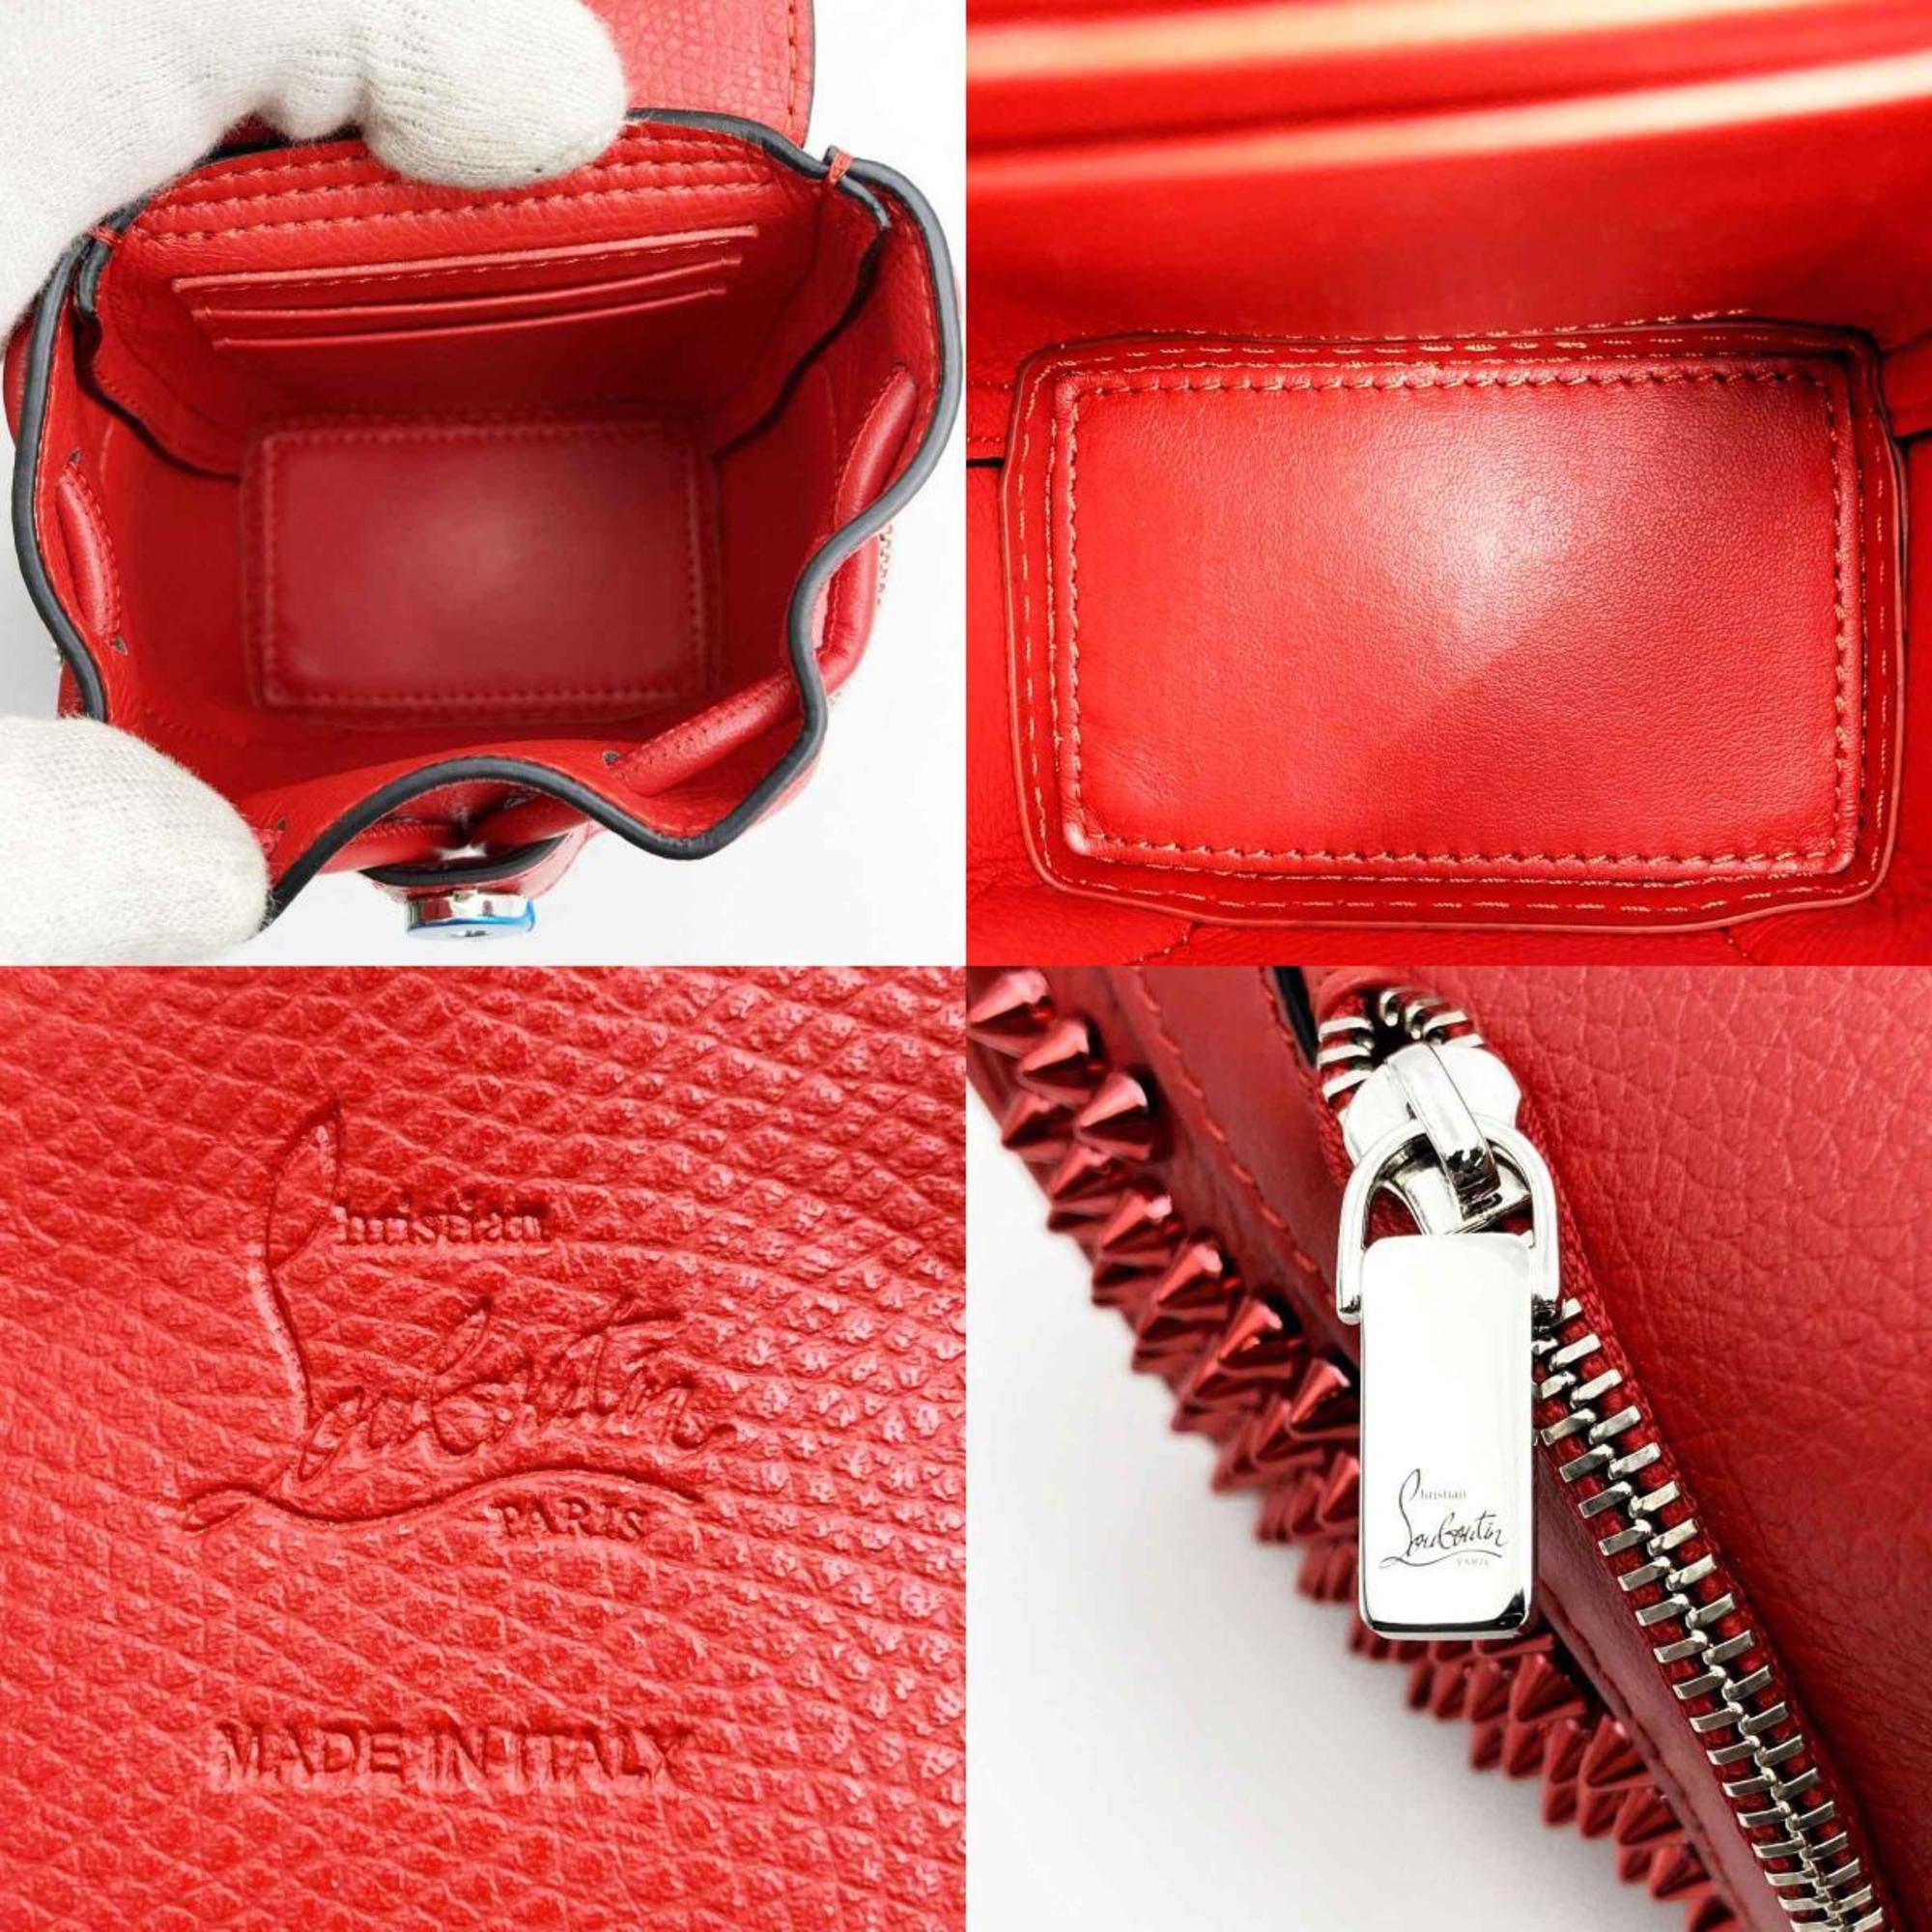 Christian Louboutin Rucksack type shoulder bag red leather ladies men ITBUL7I9ZRUK